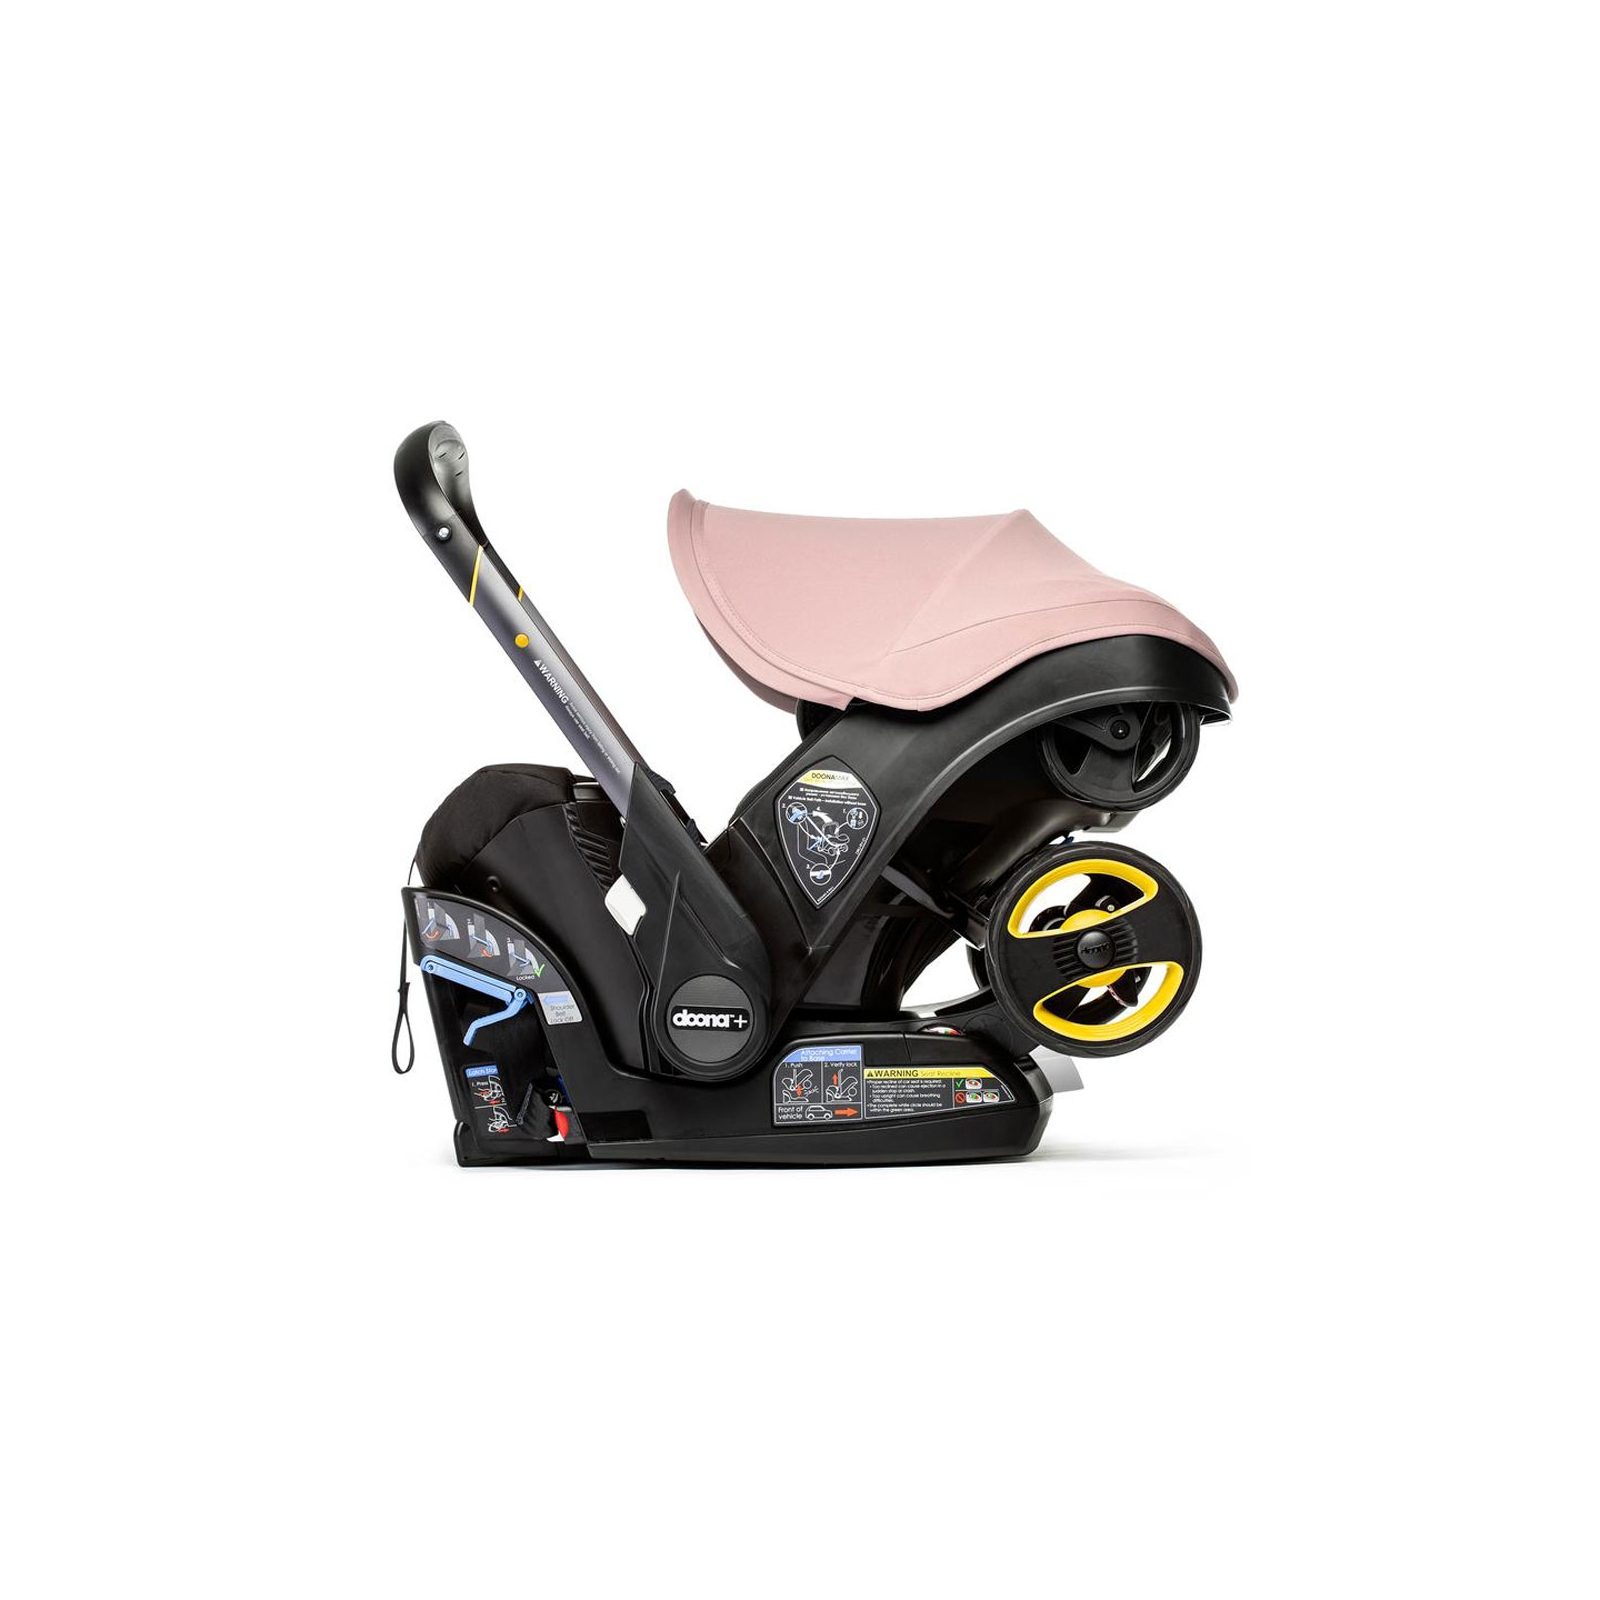 Автокресло Doona Infant Car Seat / Бежевое (SP150-20-005-015) изображение 3